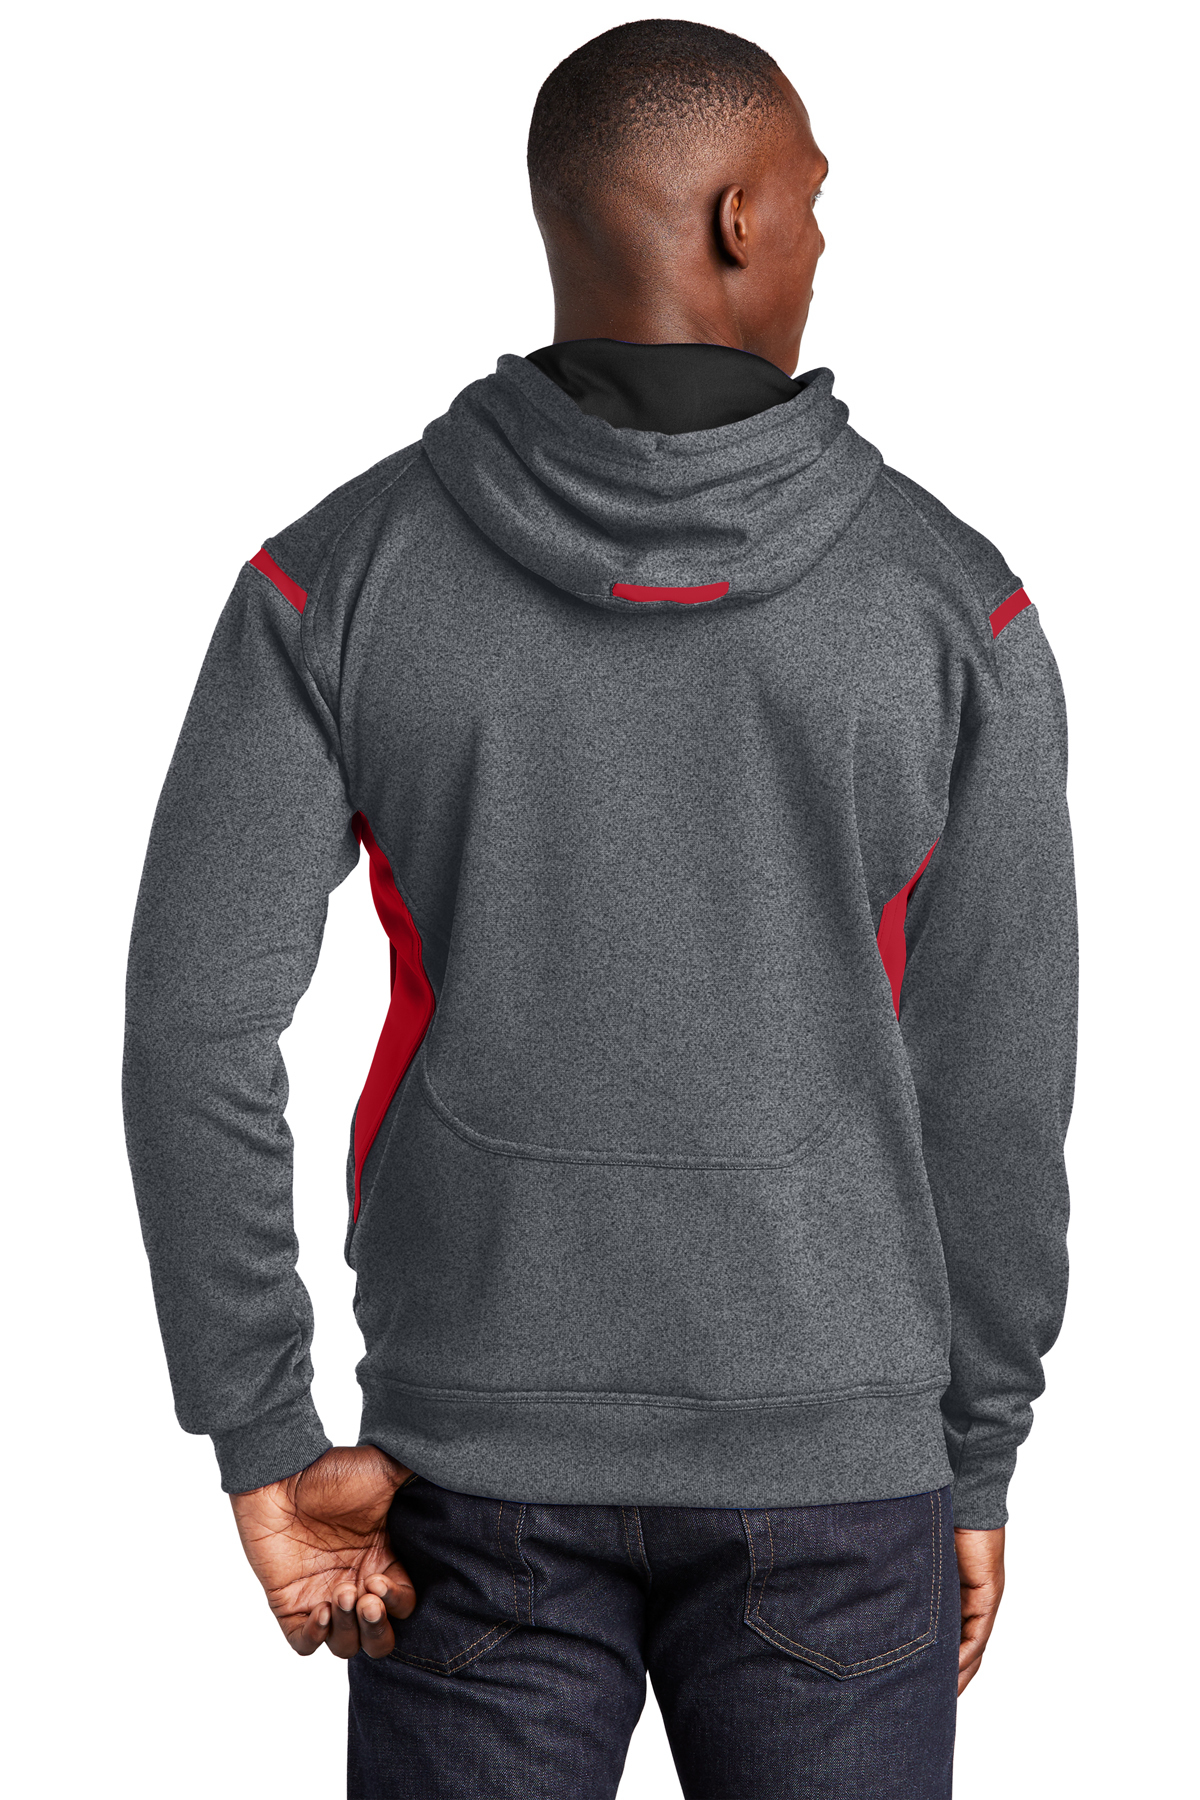 F246 - Sport-Tek Tech Fleece Colorblock Hooded Sweatshirt